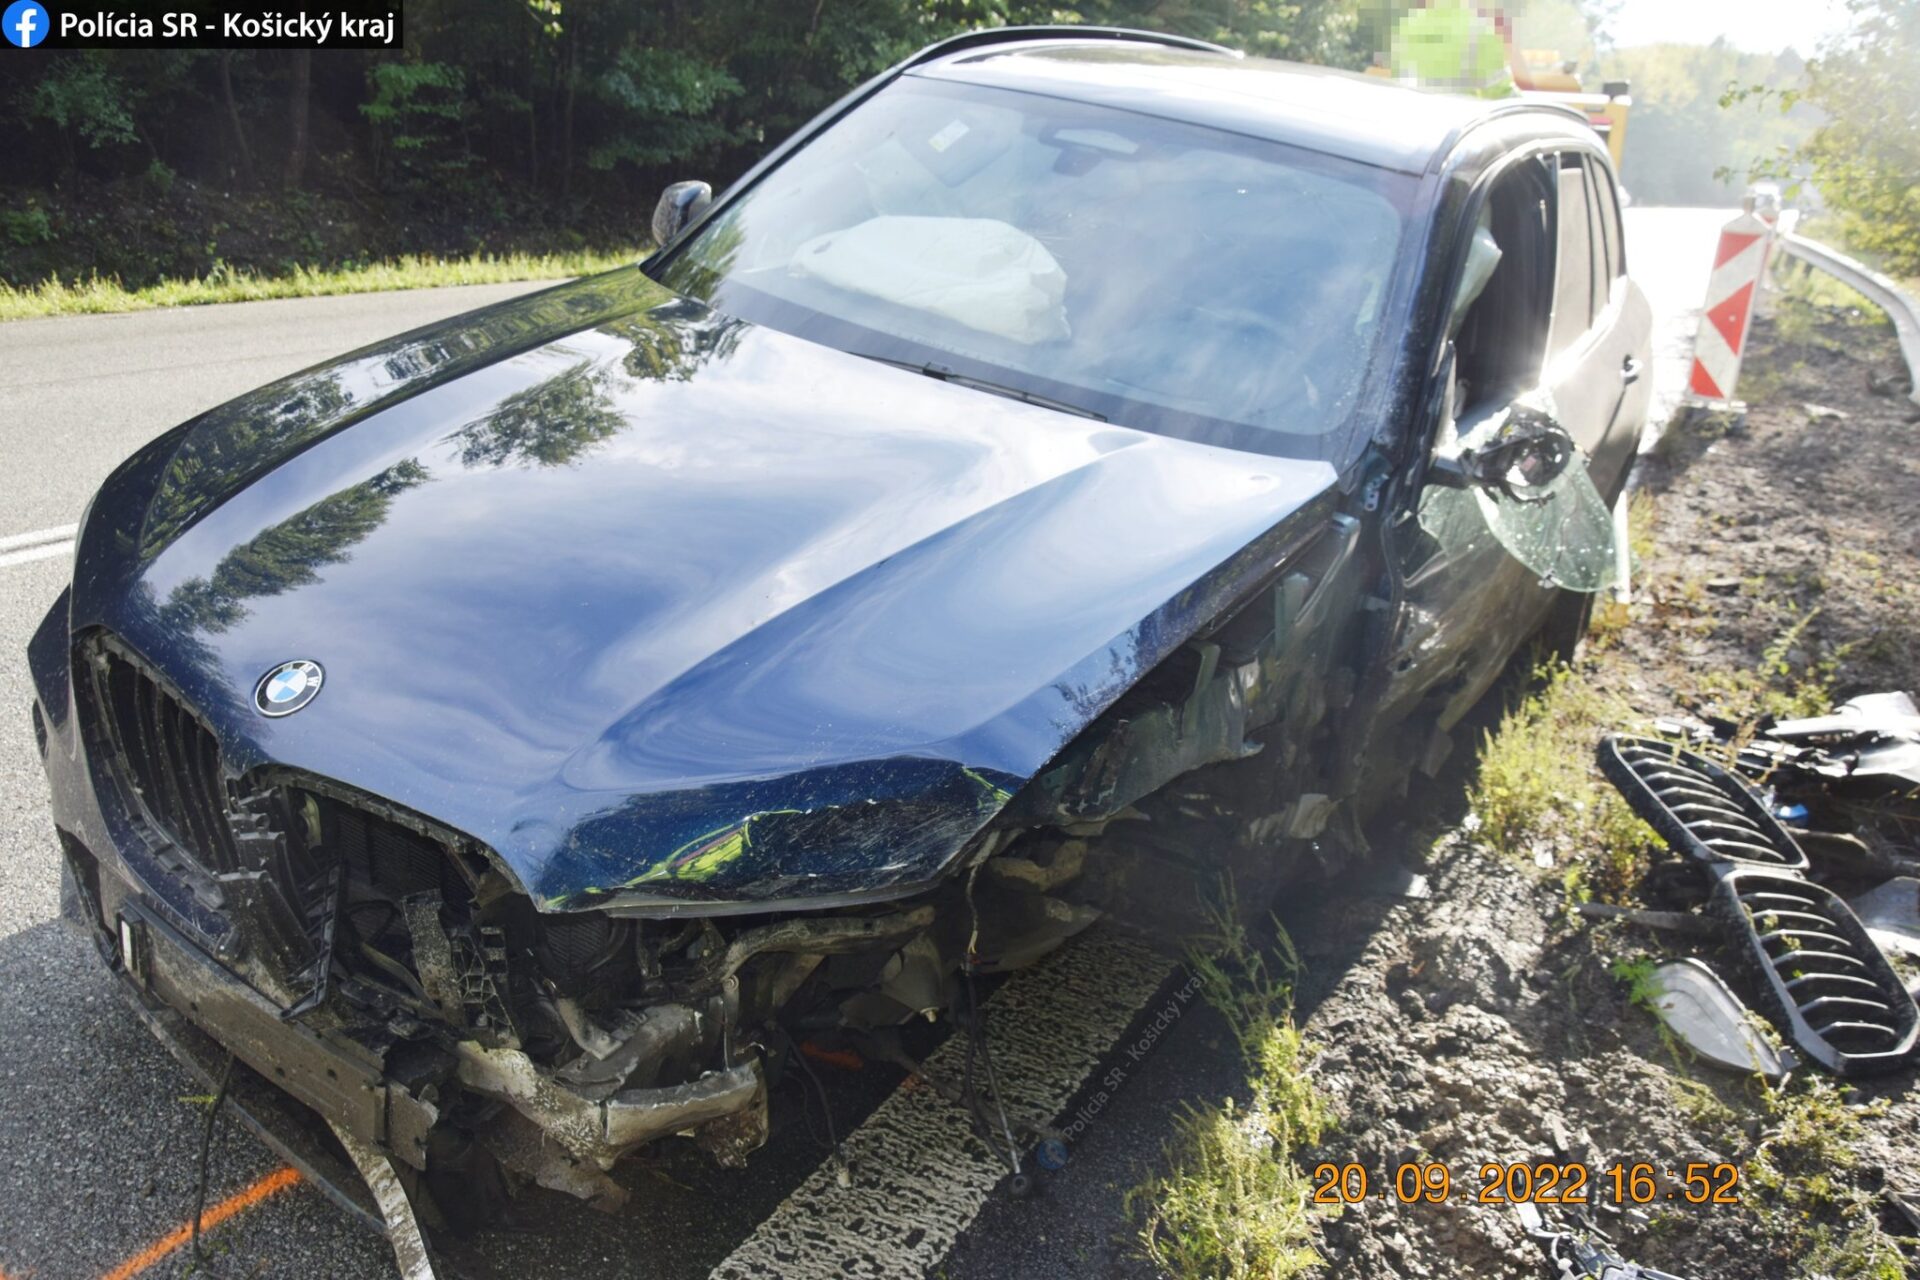 Na Dargove sa zrazili dve autá! Úlomky poškodili aj tretie vozidlo (FOTO)